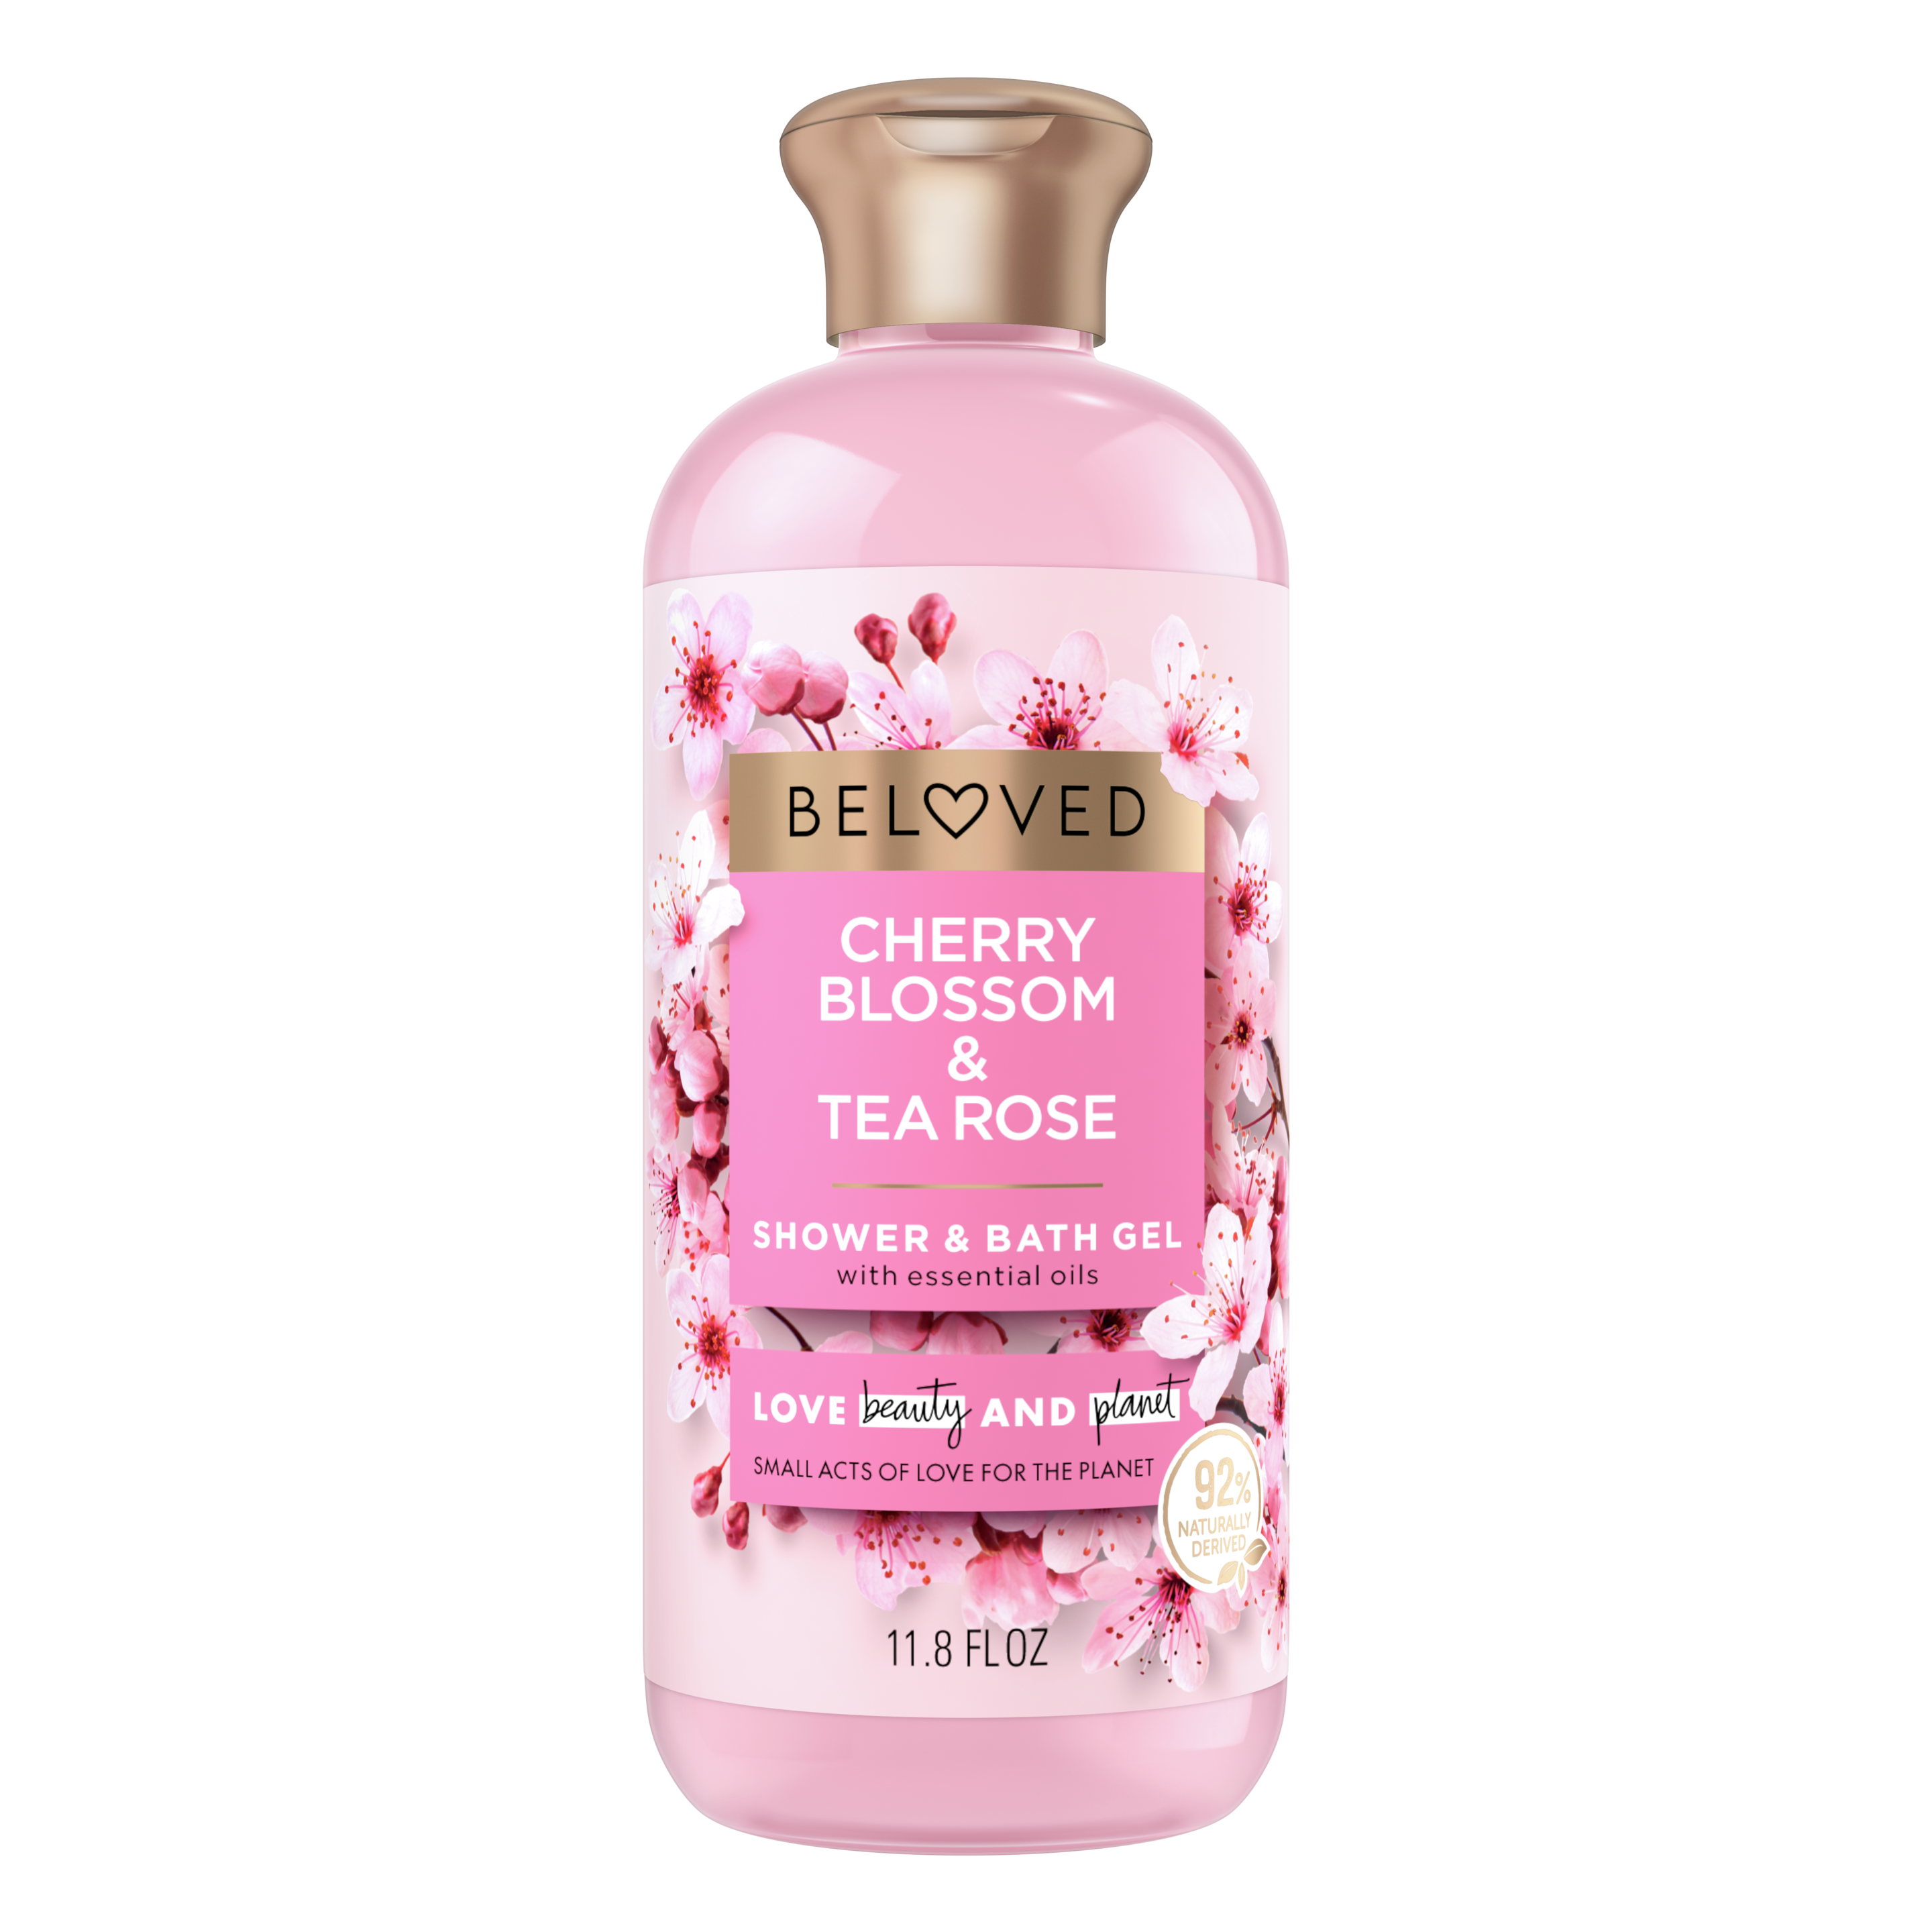 Cherry Blossom & Tea Rose Bath & Shower Gel